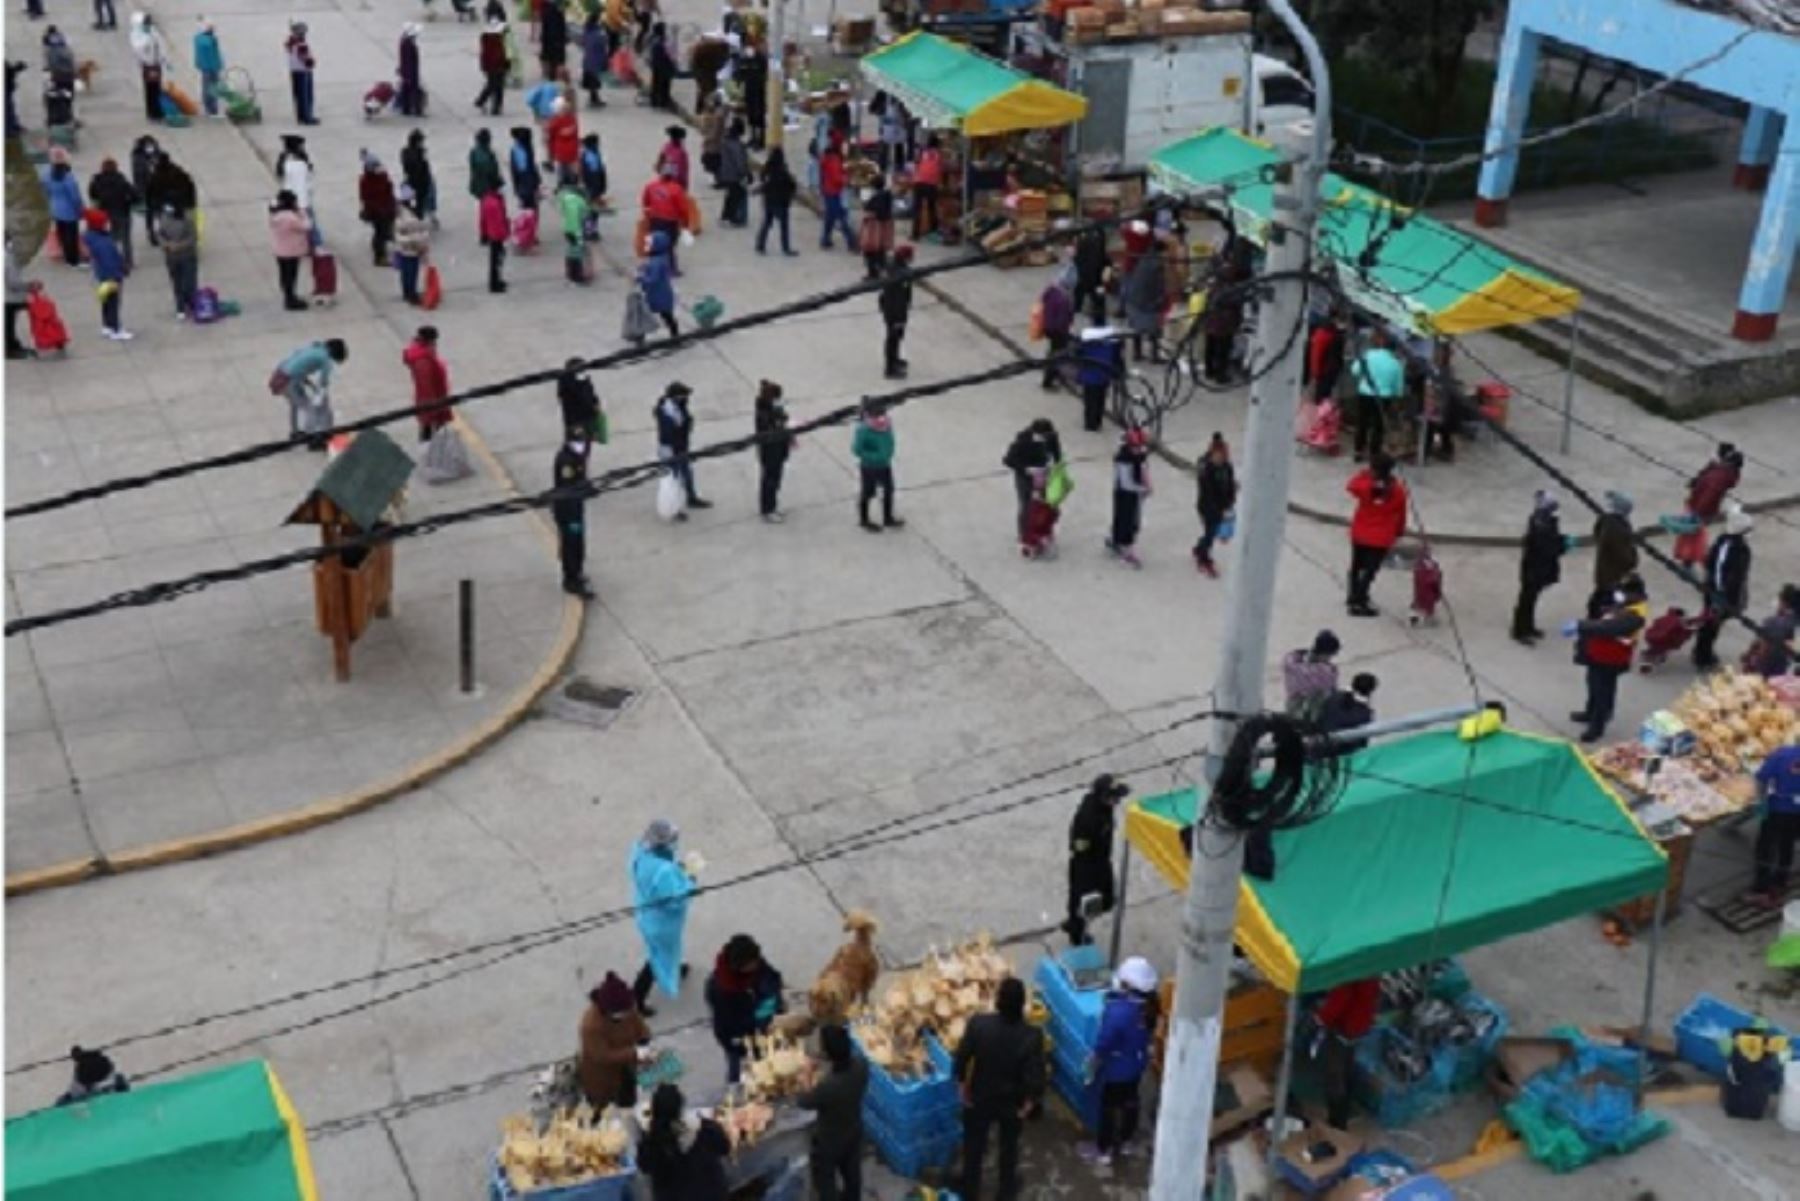 Mercado itinerante “De la chacra a la olla” llegó a Pasco y se realizó en el Parque Universitario del distrito de Yanacancha